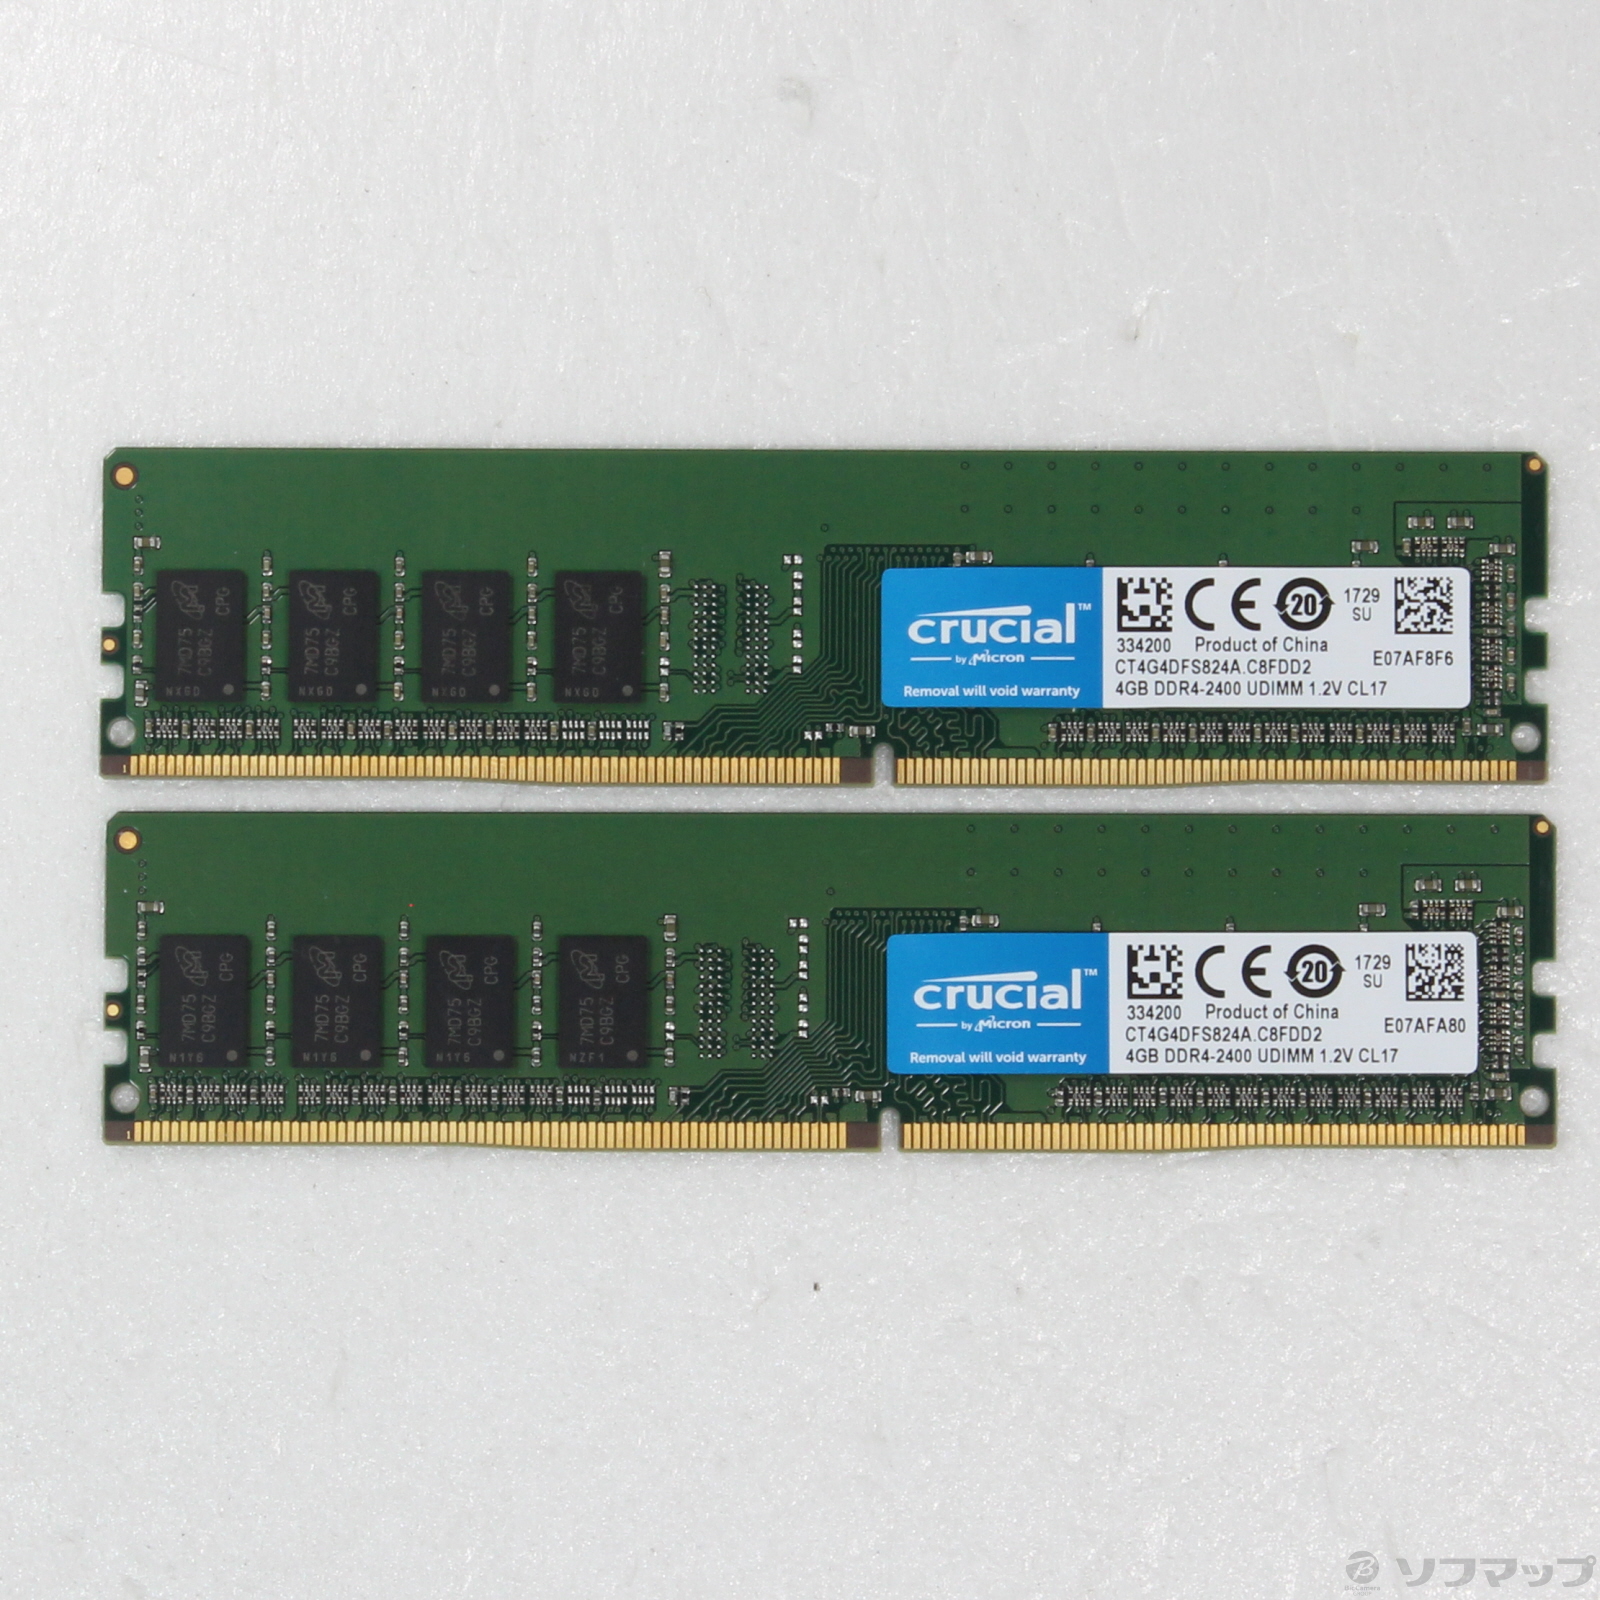 DDR4 PC4–19200 CL17 8GB